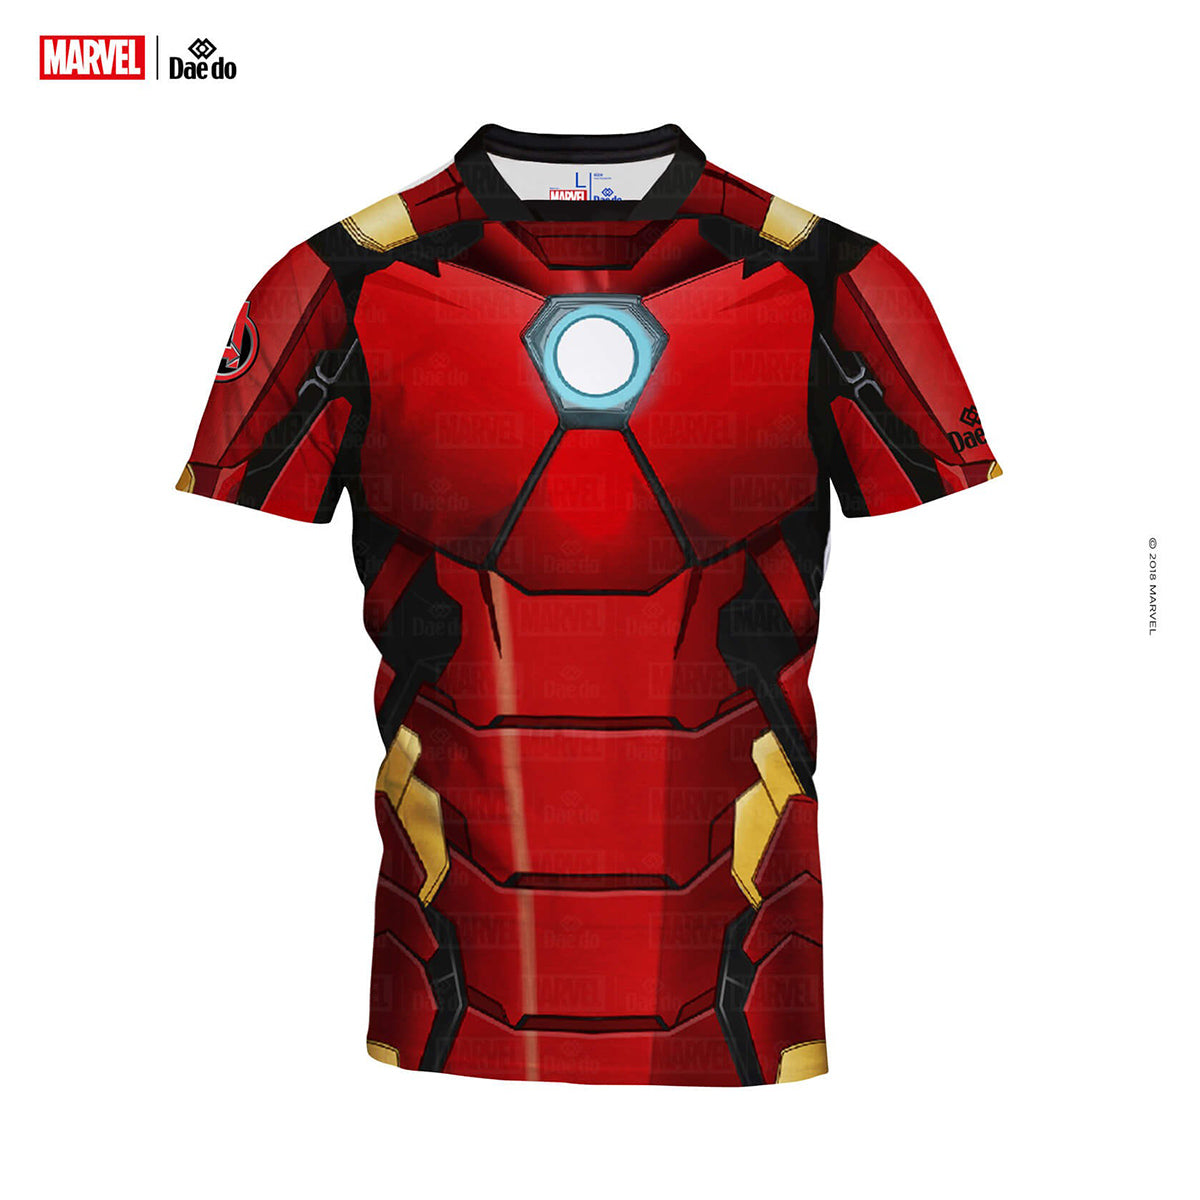 T-Shirt mit Iron Man-Volldruck von Daedo, MARV52101 